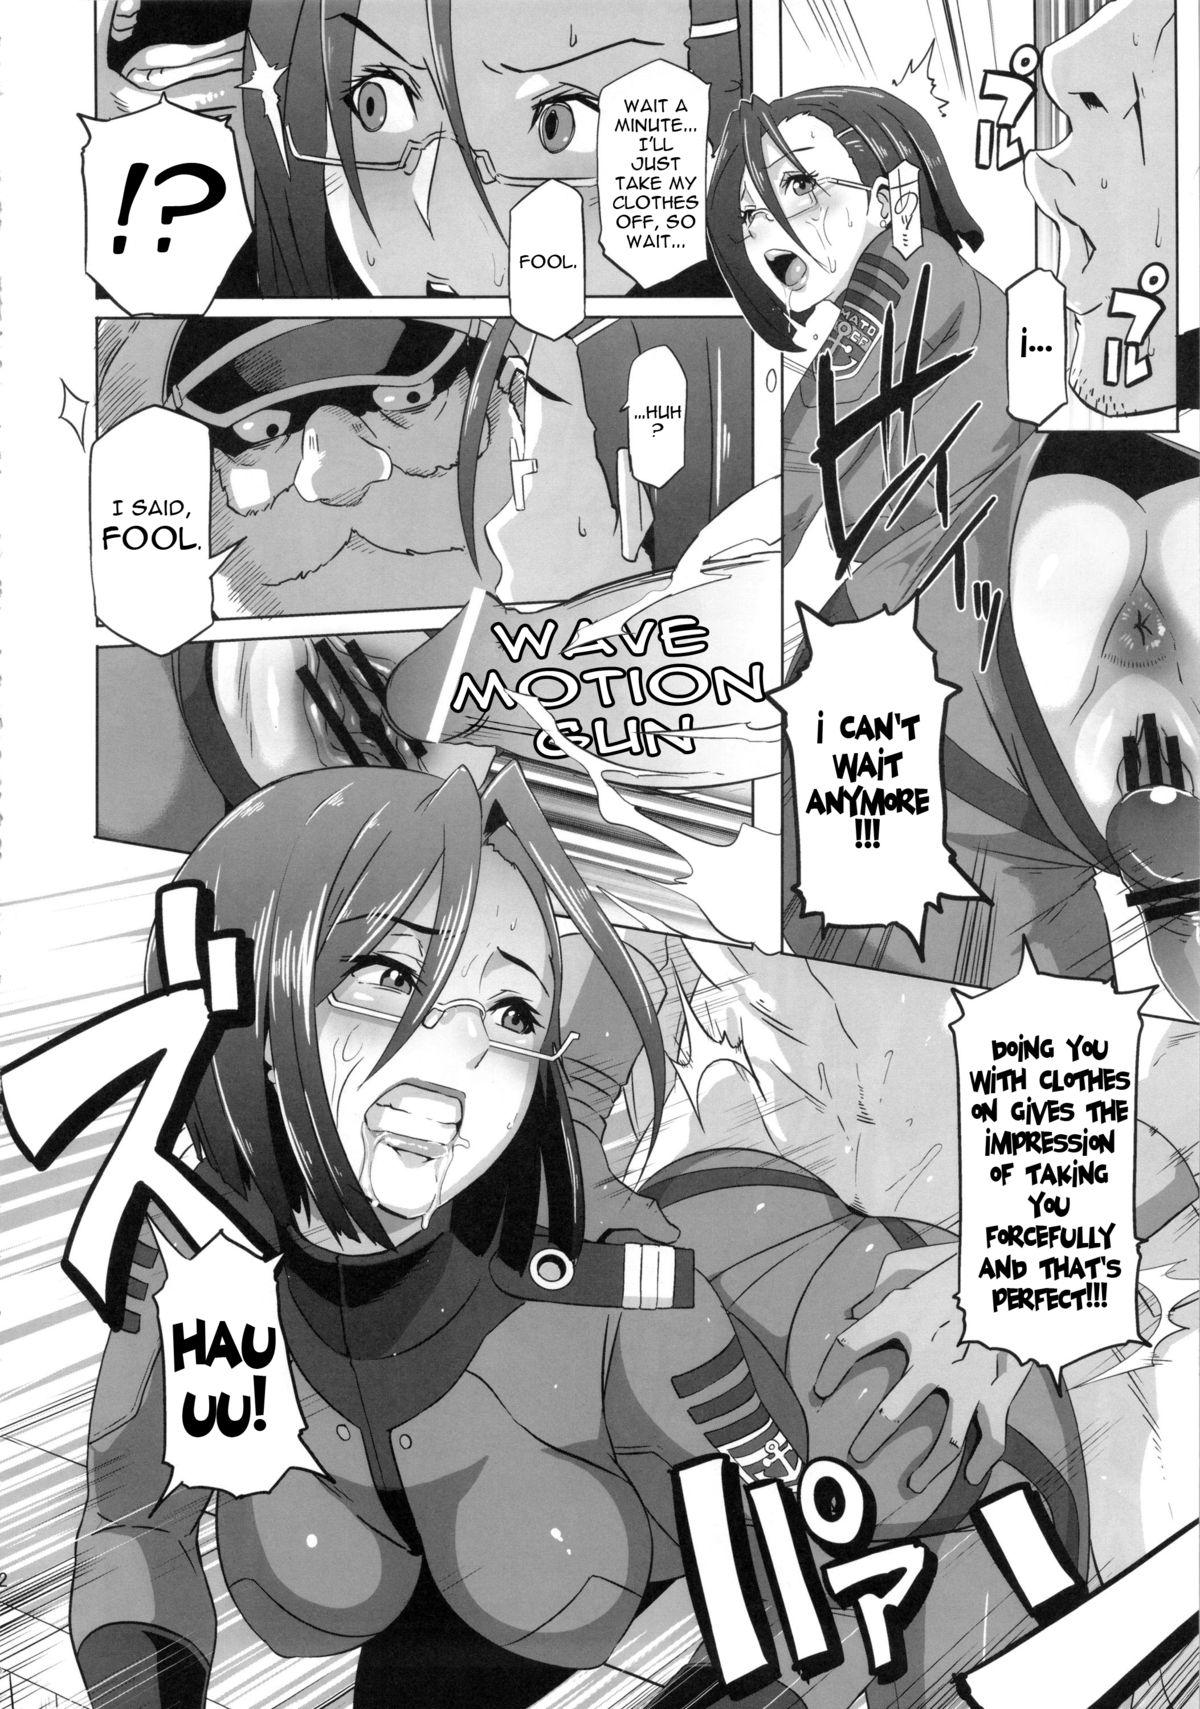 Uncensored Ian Senkan Yamato 2199 | Comfort Battleship Yamato 2199 - Space battleship yamato Girlongirl - Page 11